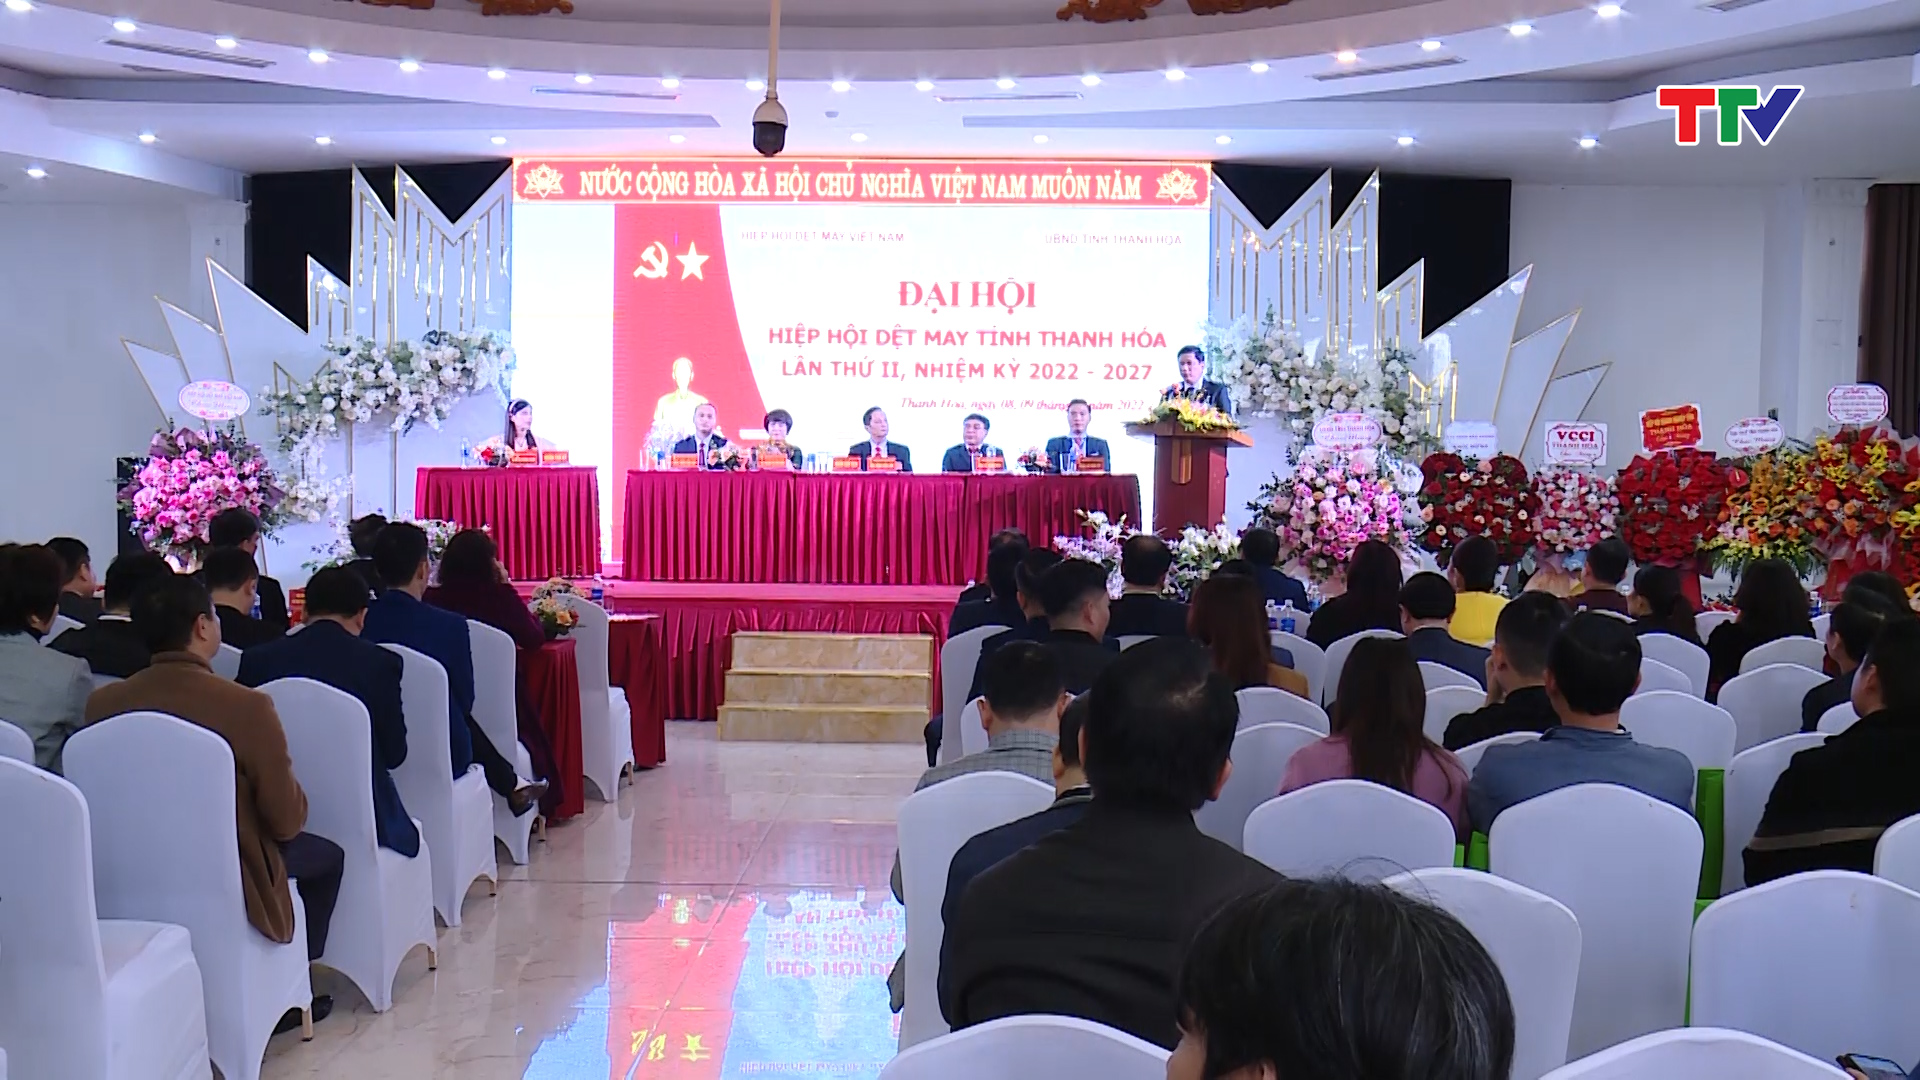 Đại hội Dệt may Thanh Hóa nhiệm kỳ 2022-2027 - Ảnh 1.